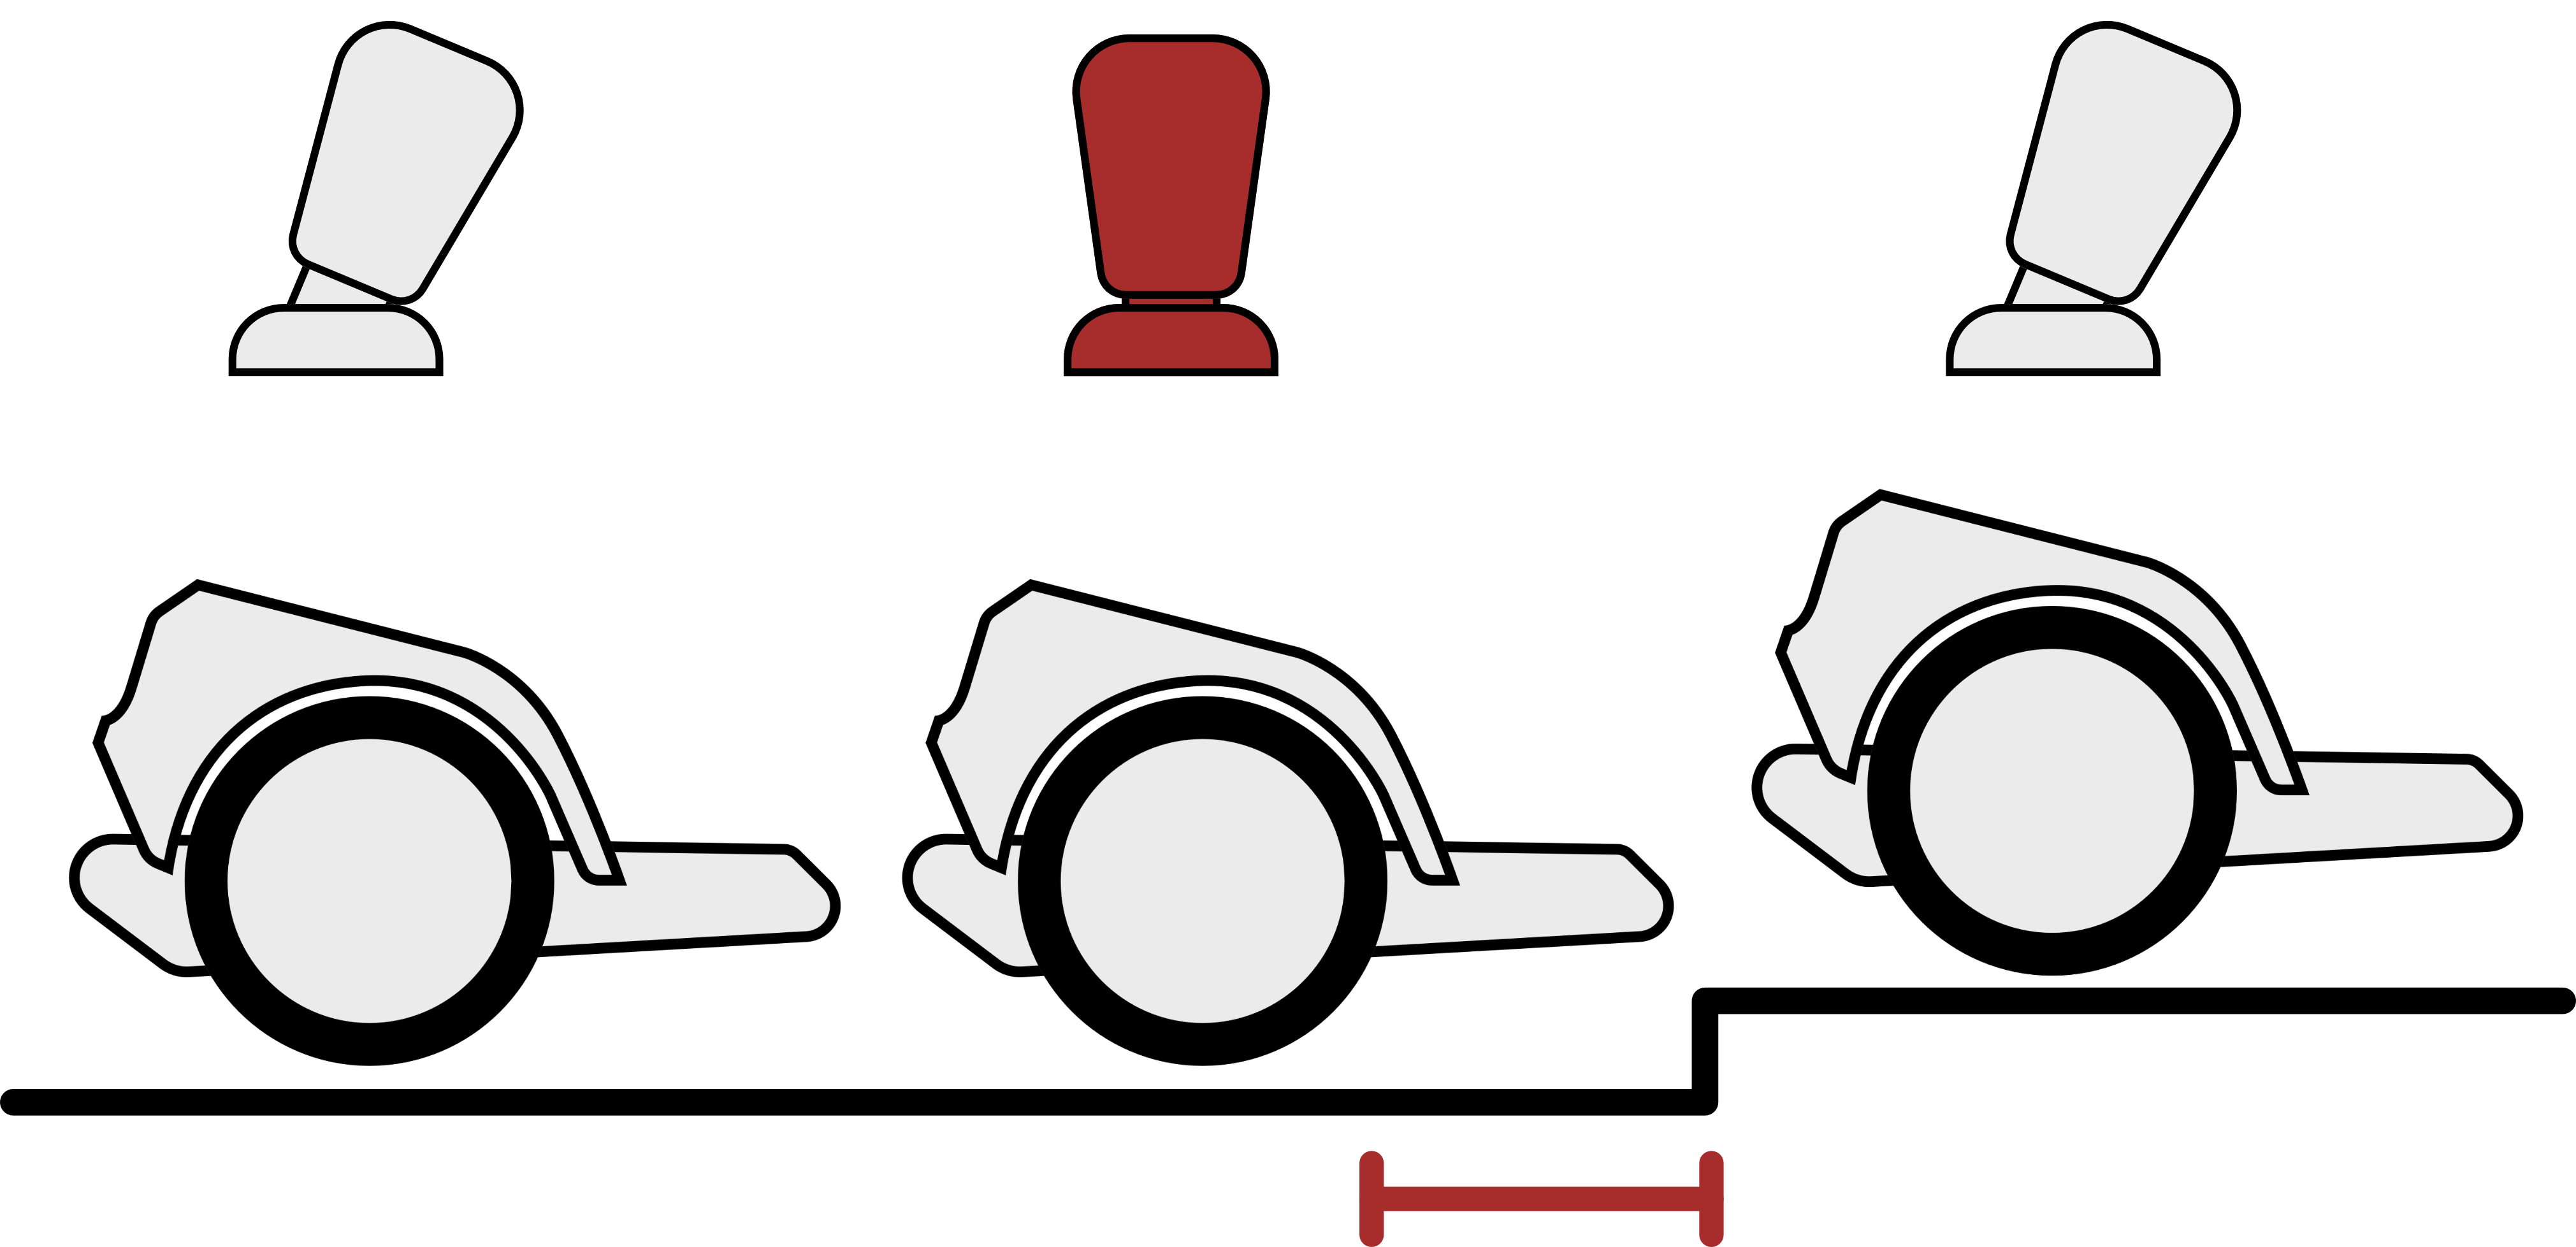 Schwellen hochfahren: Kurz bevor das Hauptrad die Schwelle erreicht, soll der Joystick kurzzeitig in Mittelstellung gebracht werden.